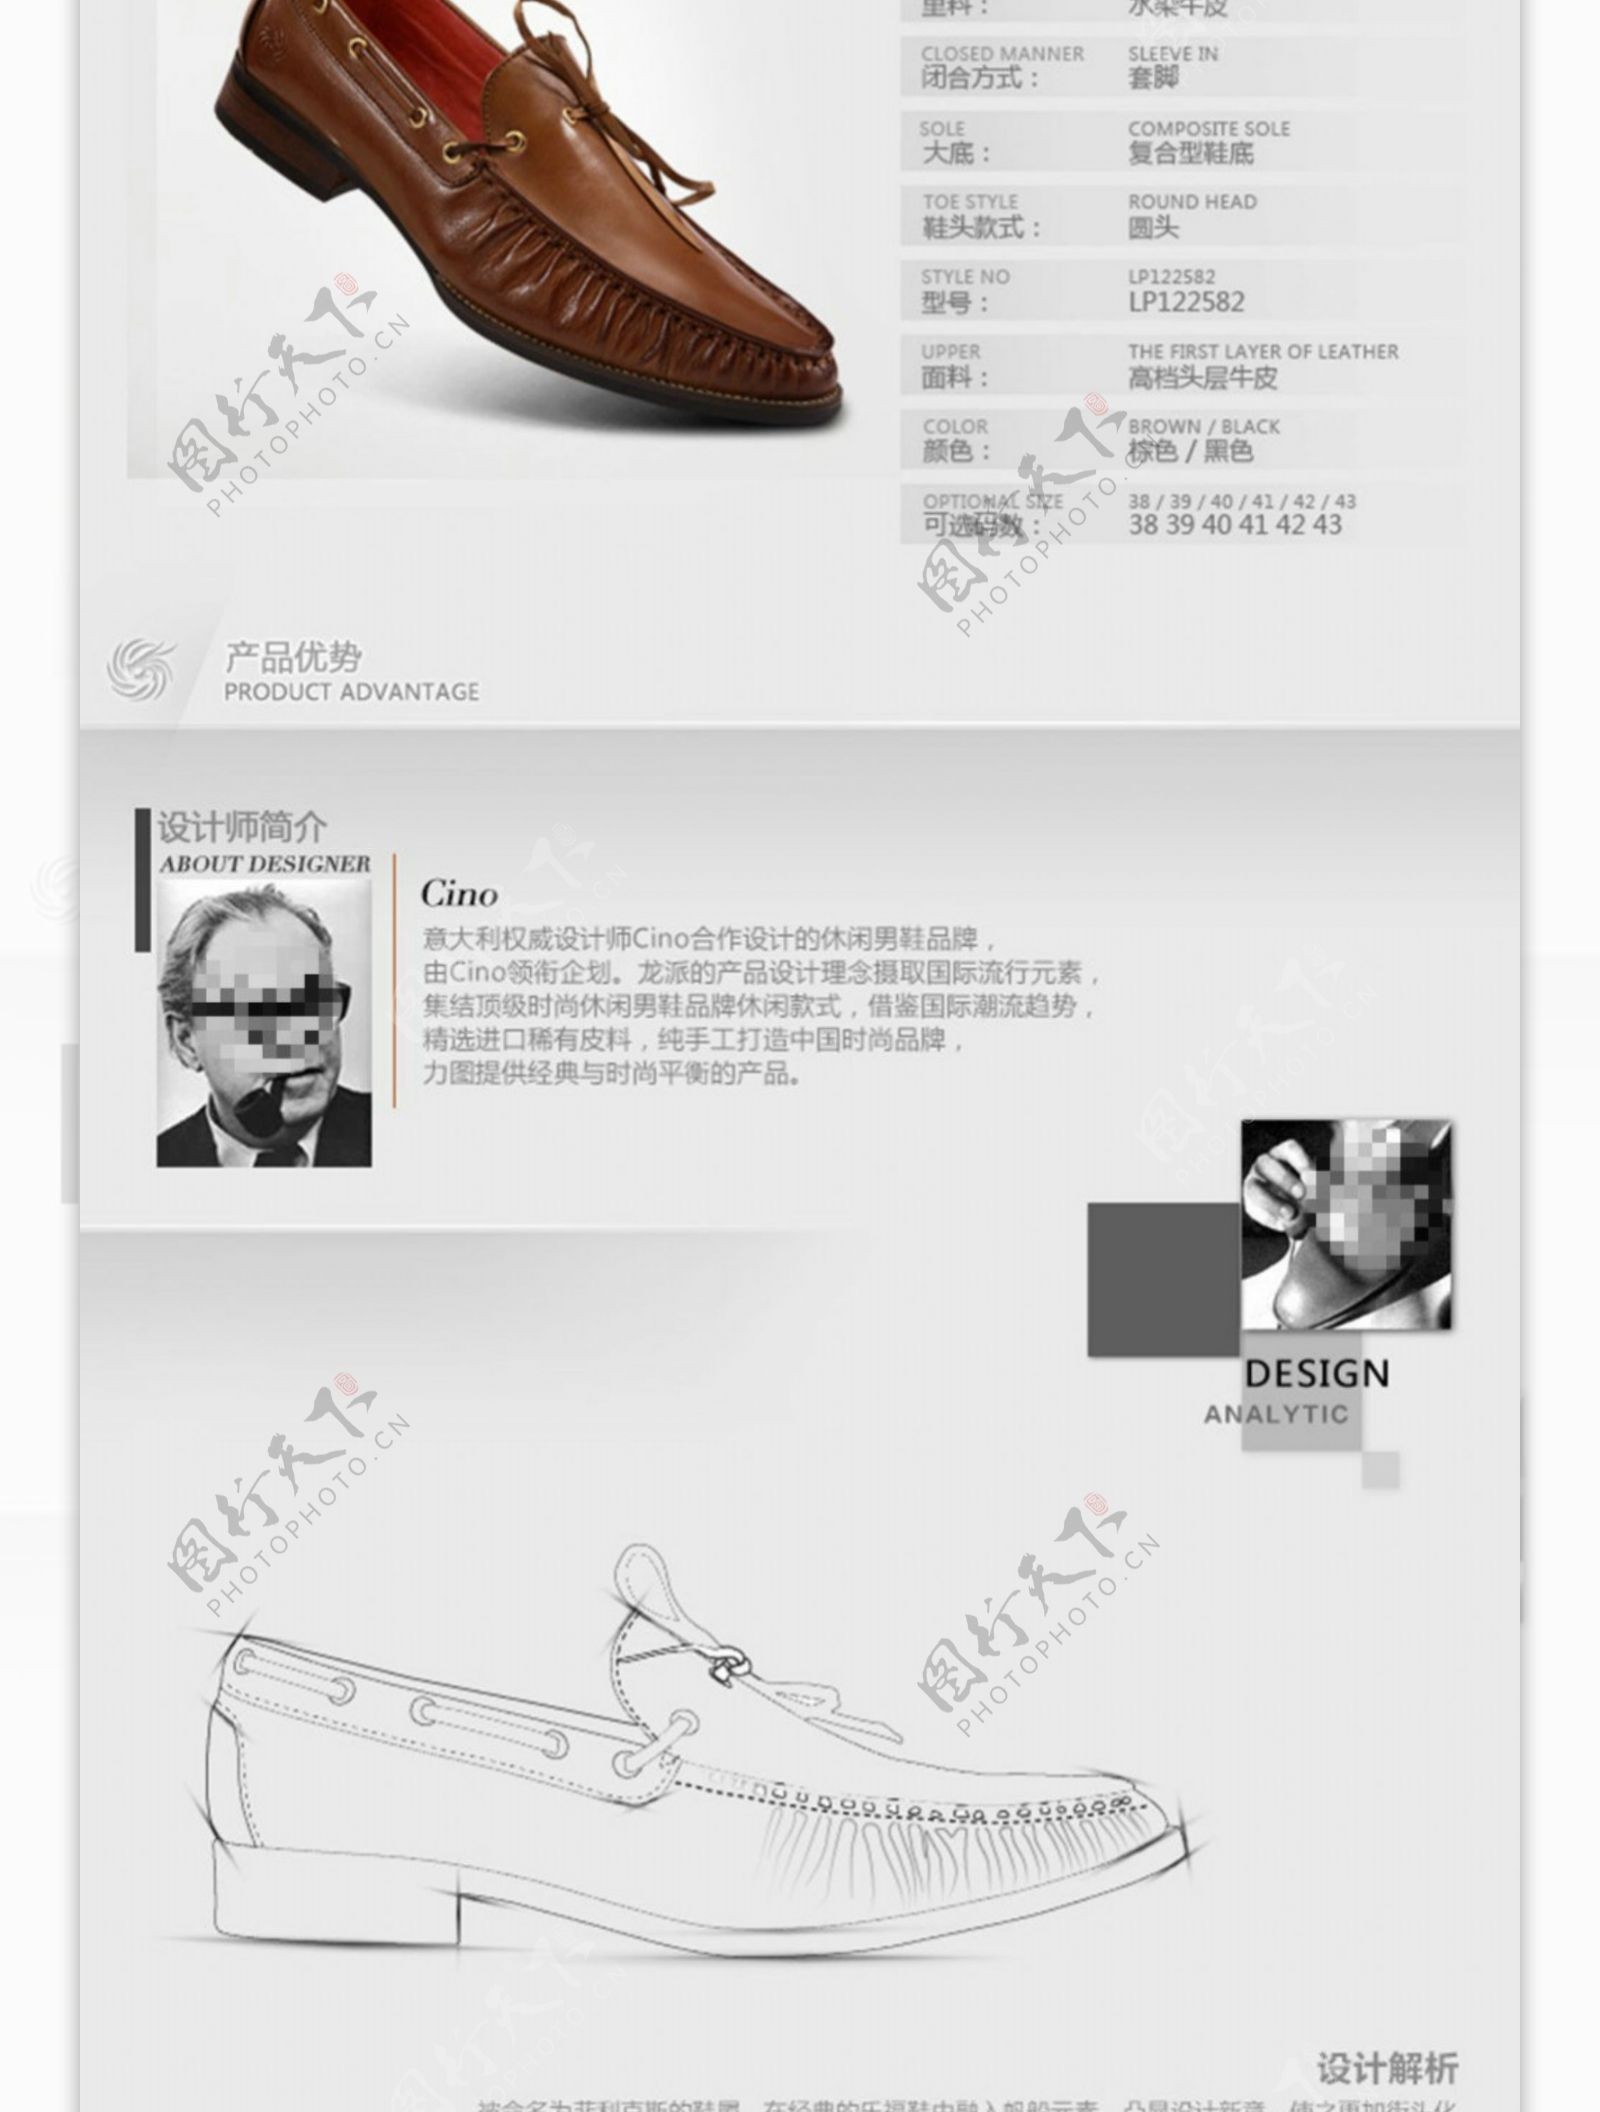 女鞋淘宝电商服装鞋业详情页模板设计